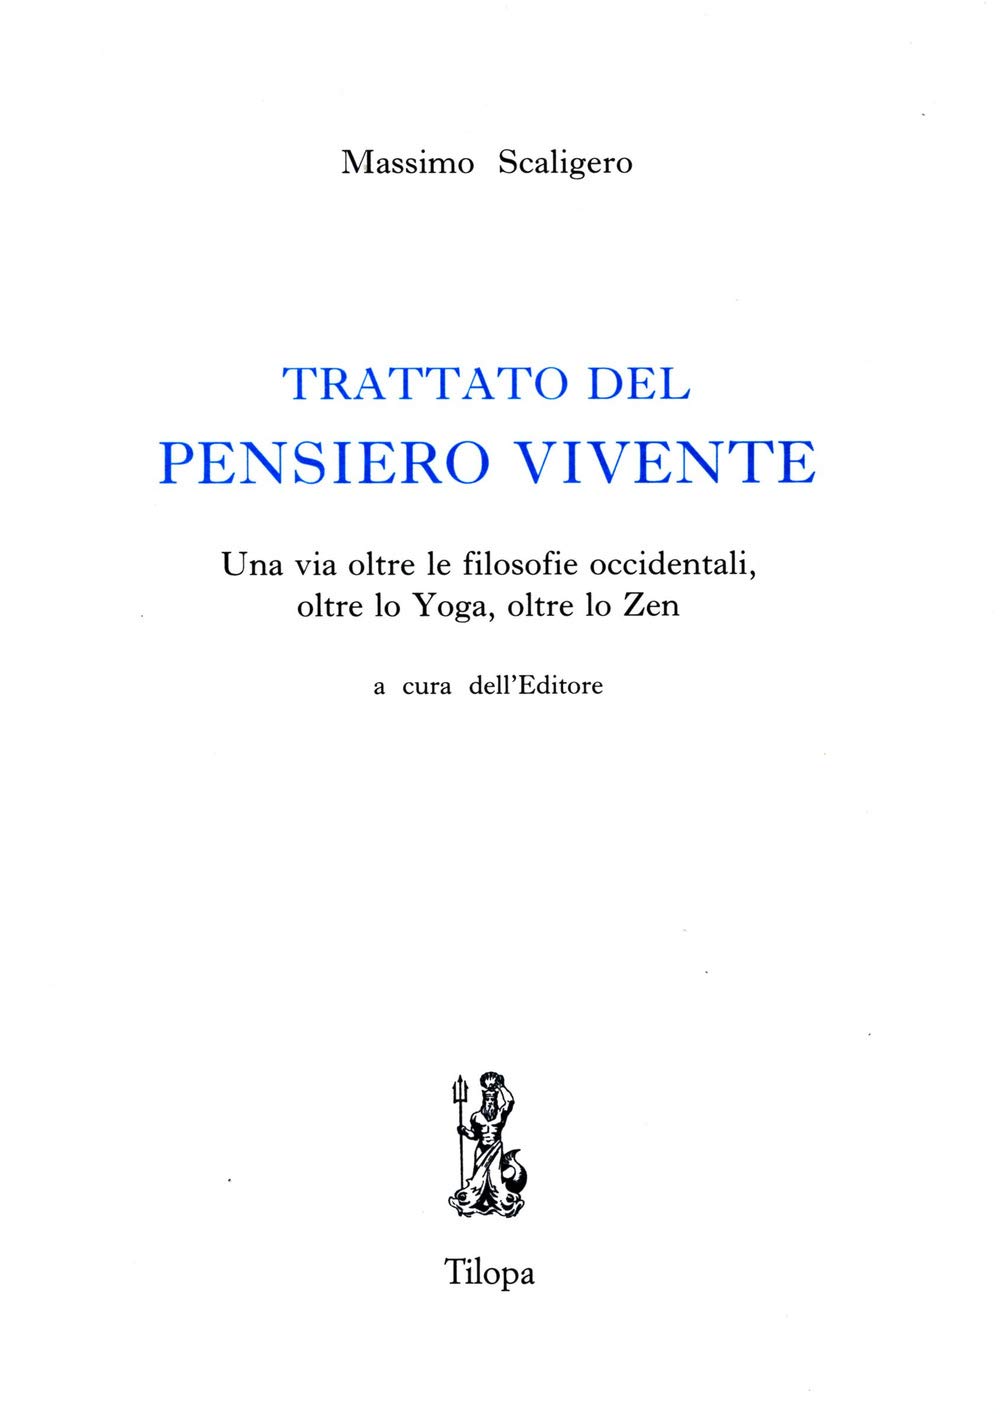 Massimo Scaligero: Trattato del pensiero vivente (Paperback, Italiano language, 2006, A.C. Fondazione Massimo Scaligero - Tilopa ed.)